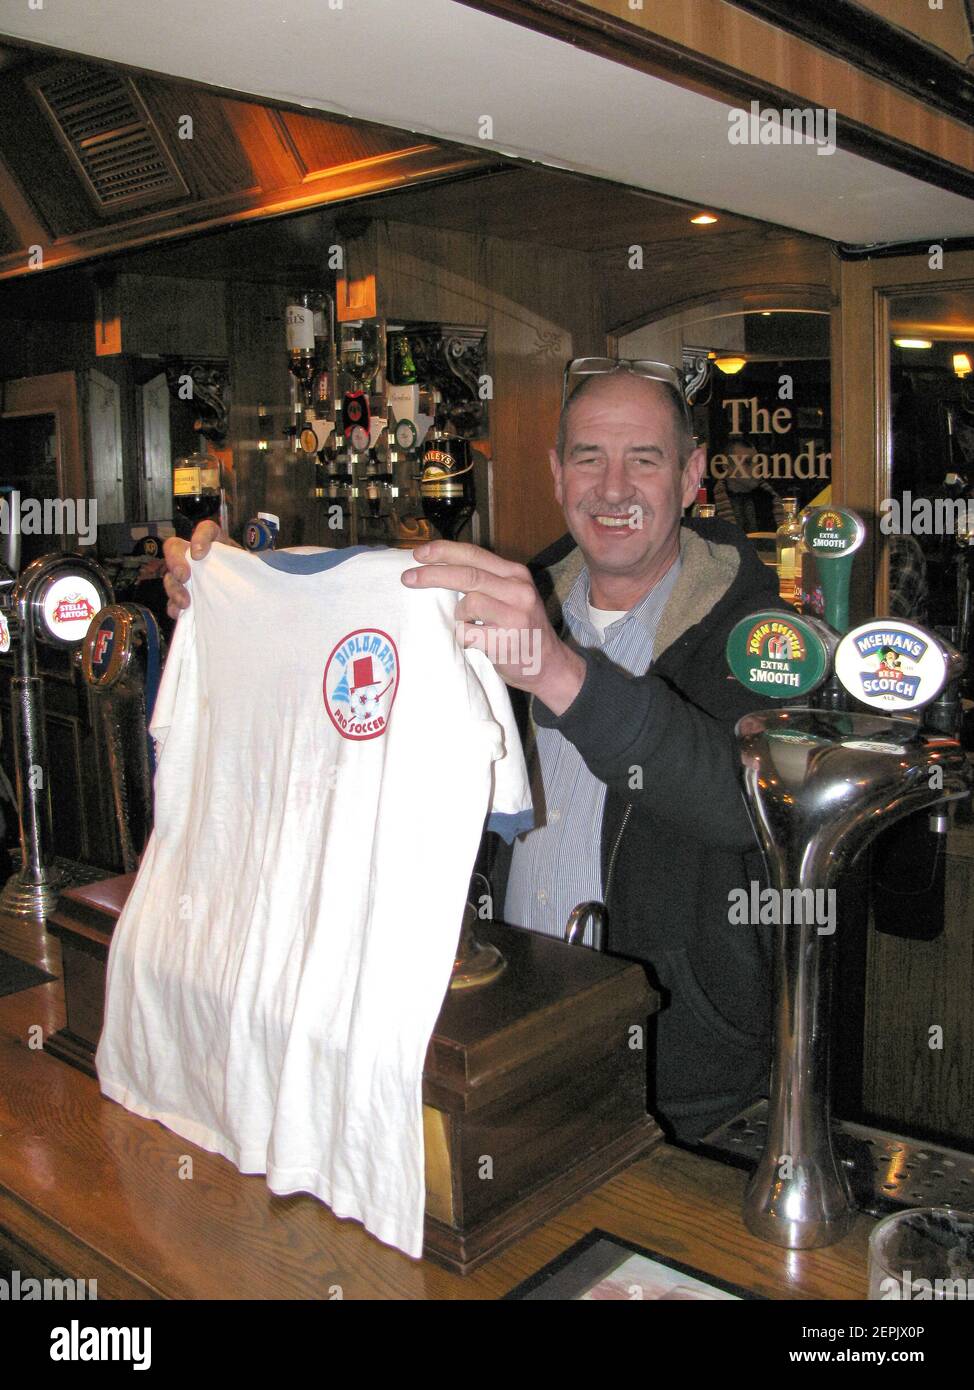 Ehemaliger englischer Fußballstar Paul Cannell mit einem alten Washington Diplomats T-Shirt. Stockfoto